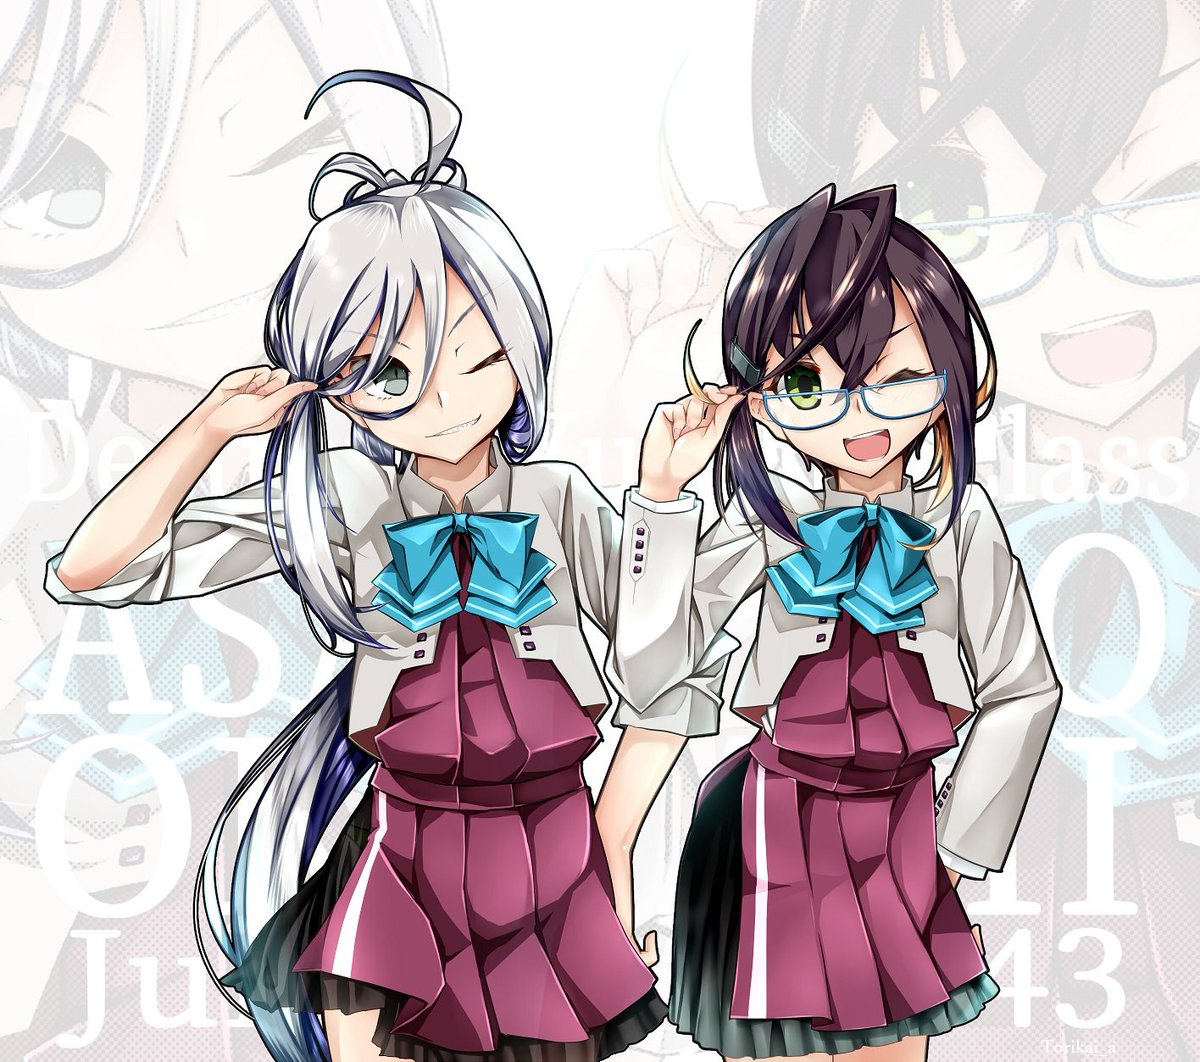 asashimo (kancolle) ,okinami (kancolle) multiple girls 2girls blue-framed eyewear glasses one eye closed green eyes jacket  illustration images